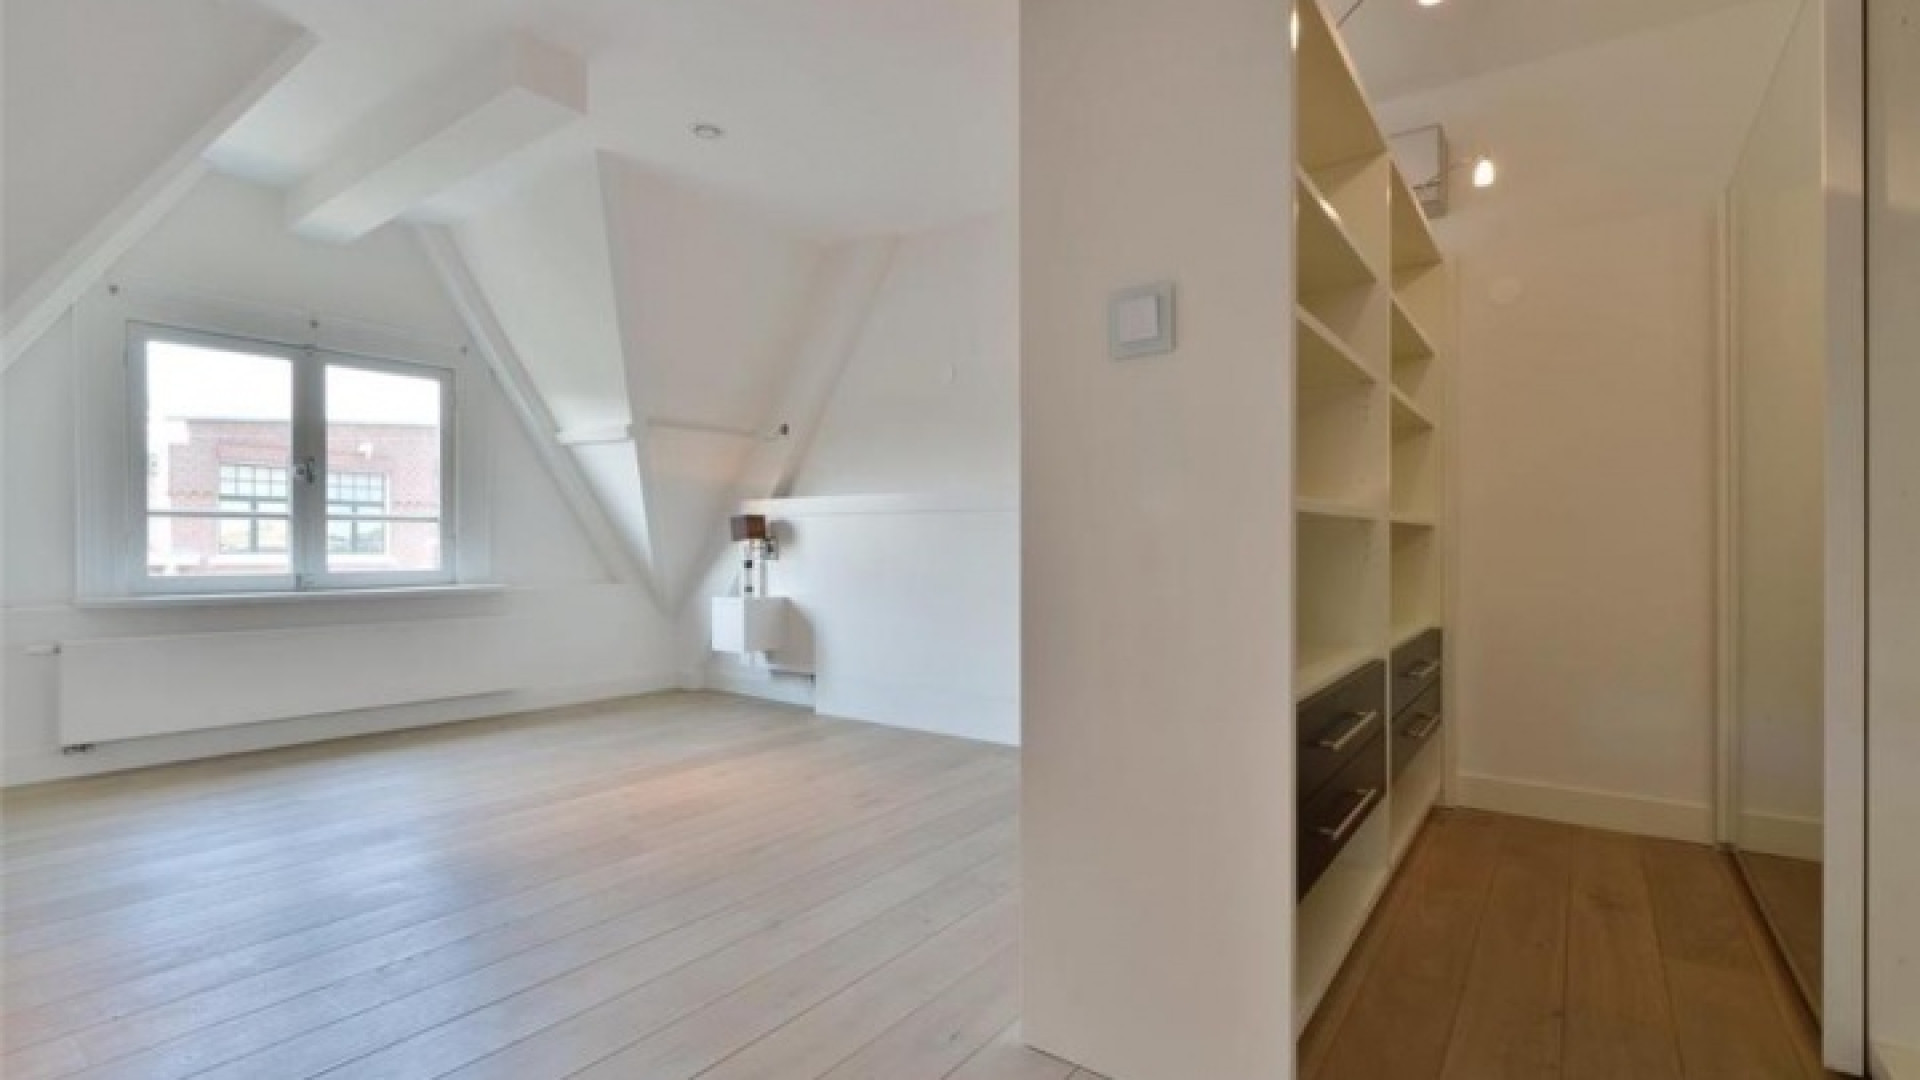 Frank Rijkaard zoekt huurder voor zijn luxe dubbele bovenhuis. Zie foto's 18